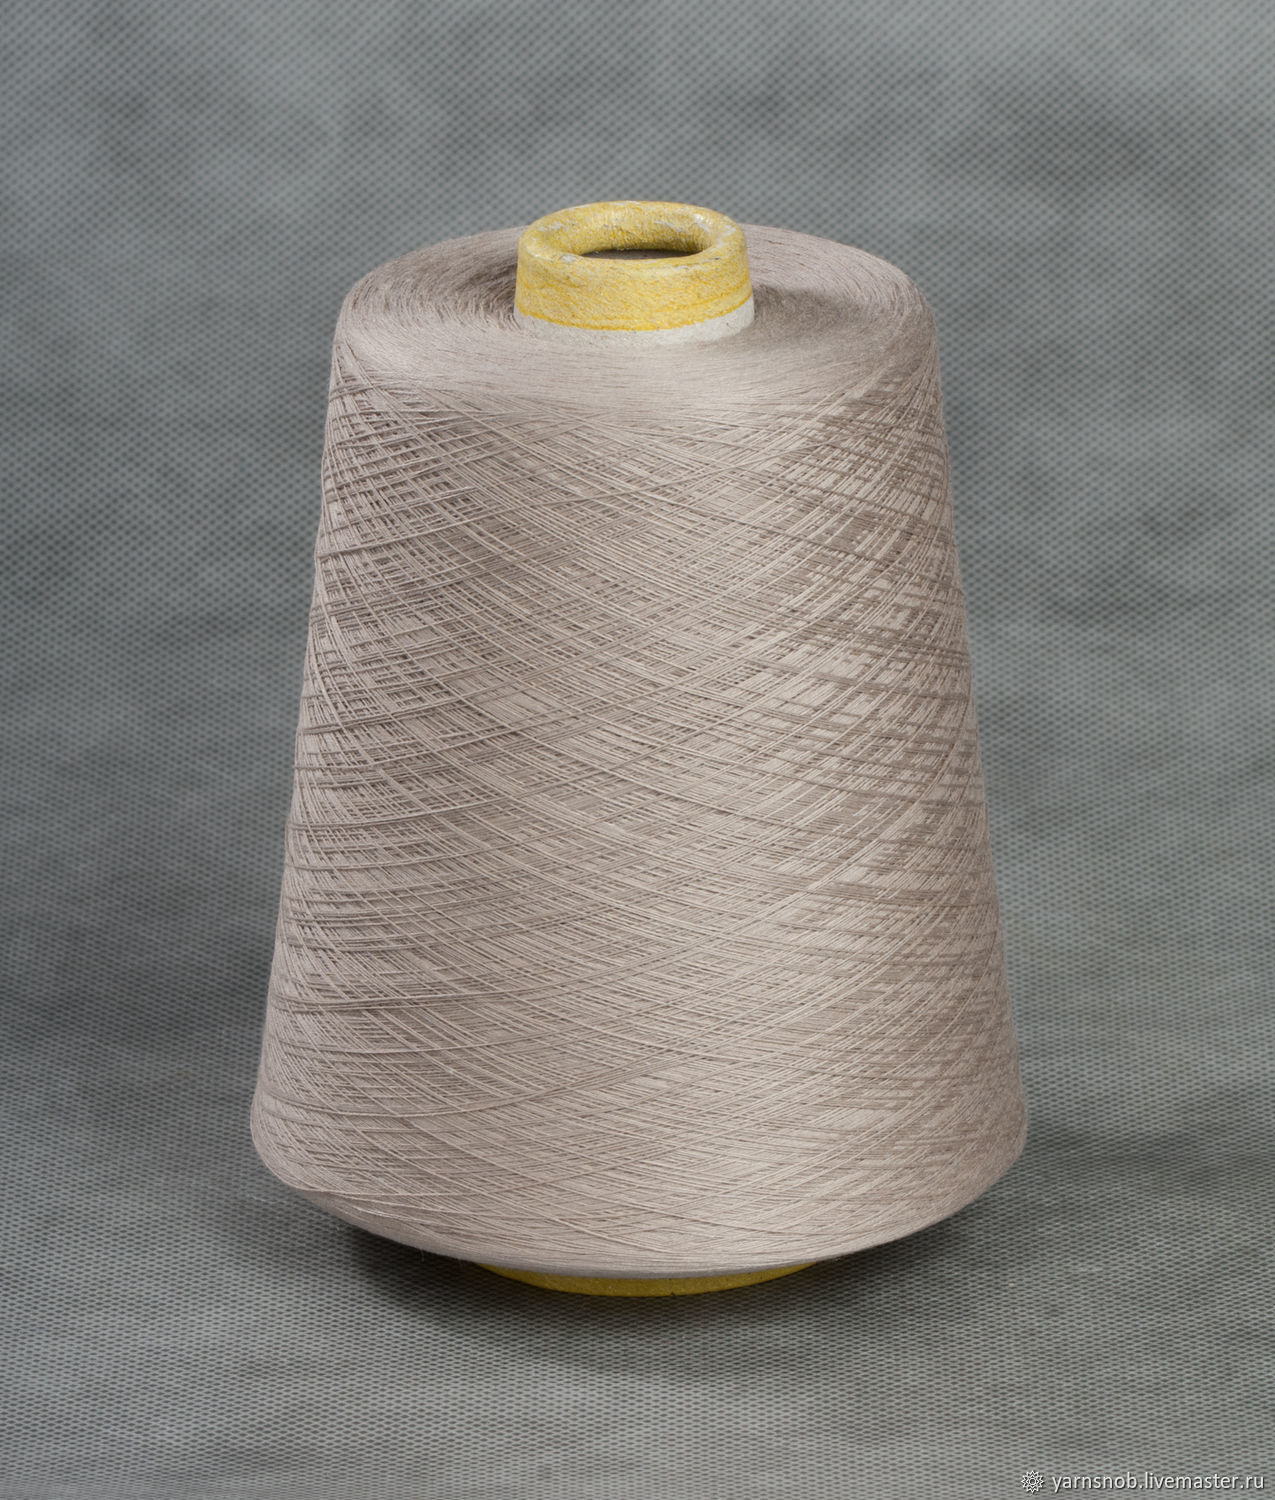 Пряжа silk купить. Пряжа Baccara 85% шелк 15% полиамид. Хлопчатобумажные нитки. Пряжа хлопок с шелком. Шелковая нить для вязания.